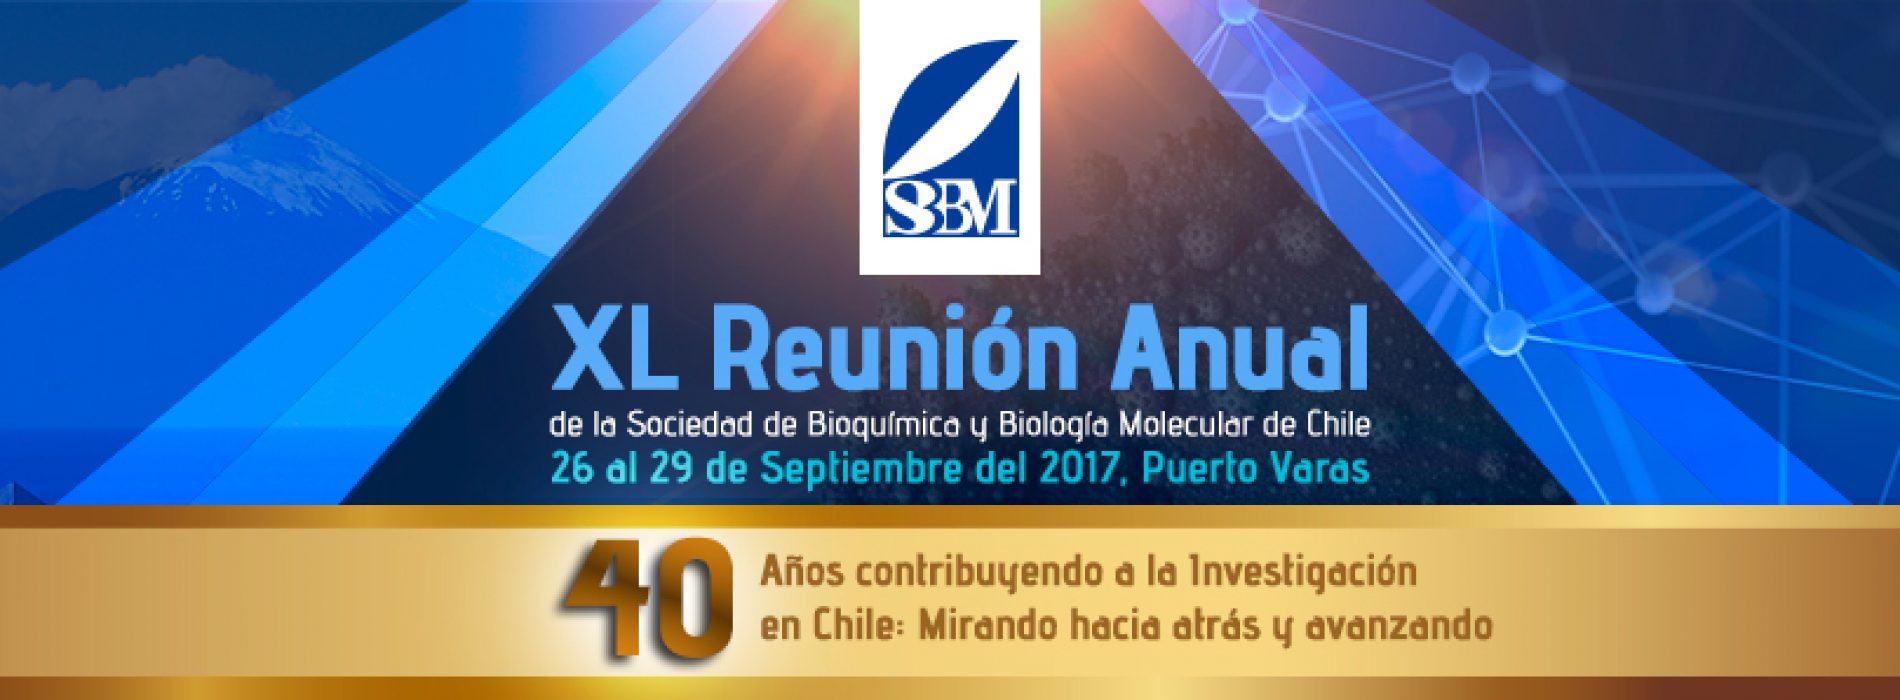 Registro audiovisual del congreso de la Sociedad de Bioquímica y Biología Molecular de Chile 2017